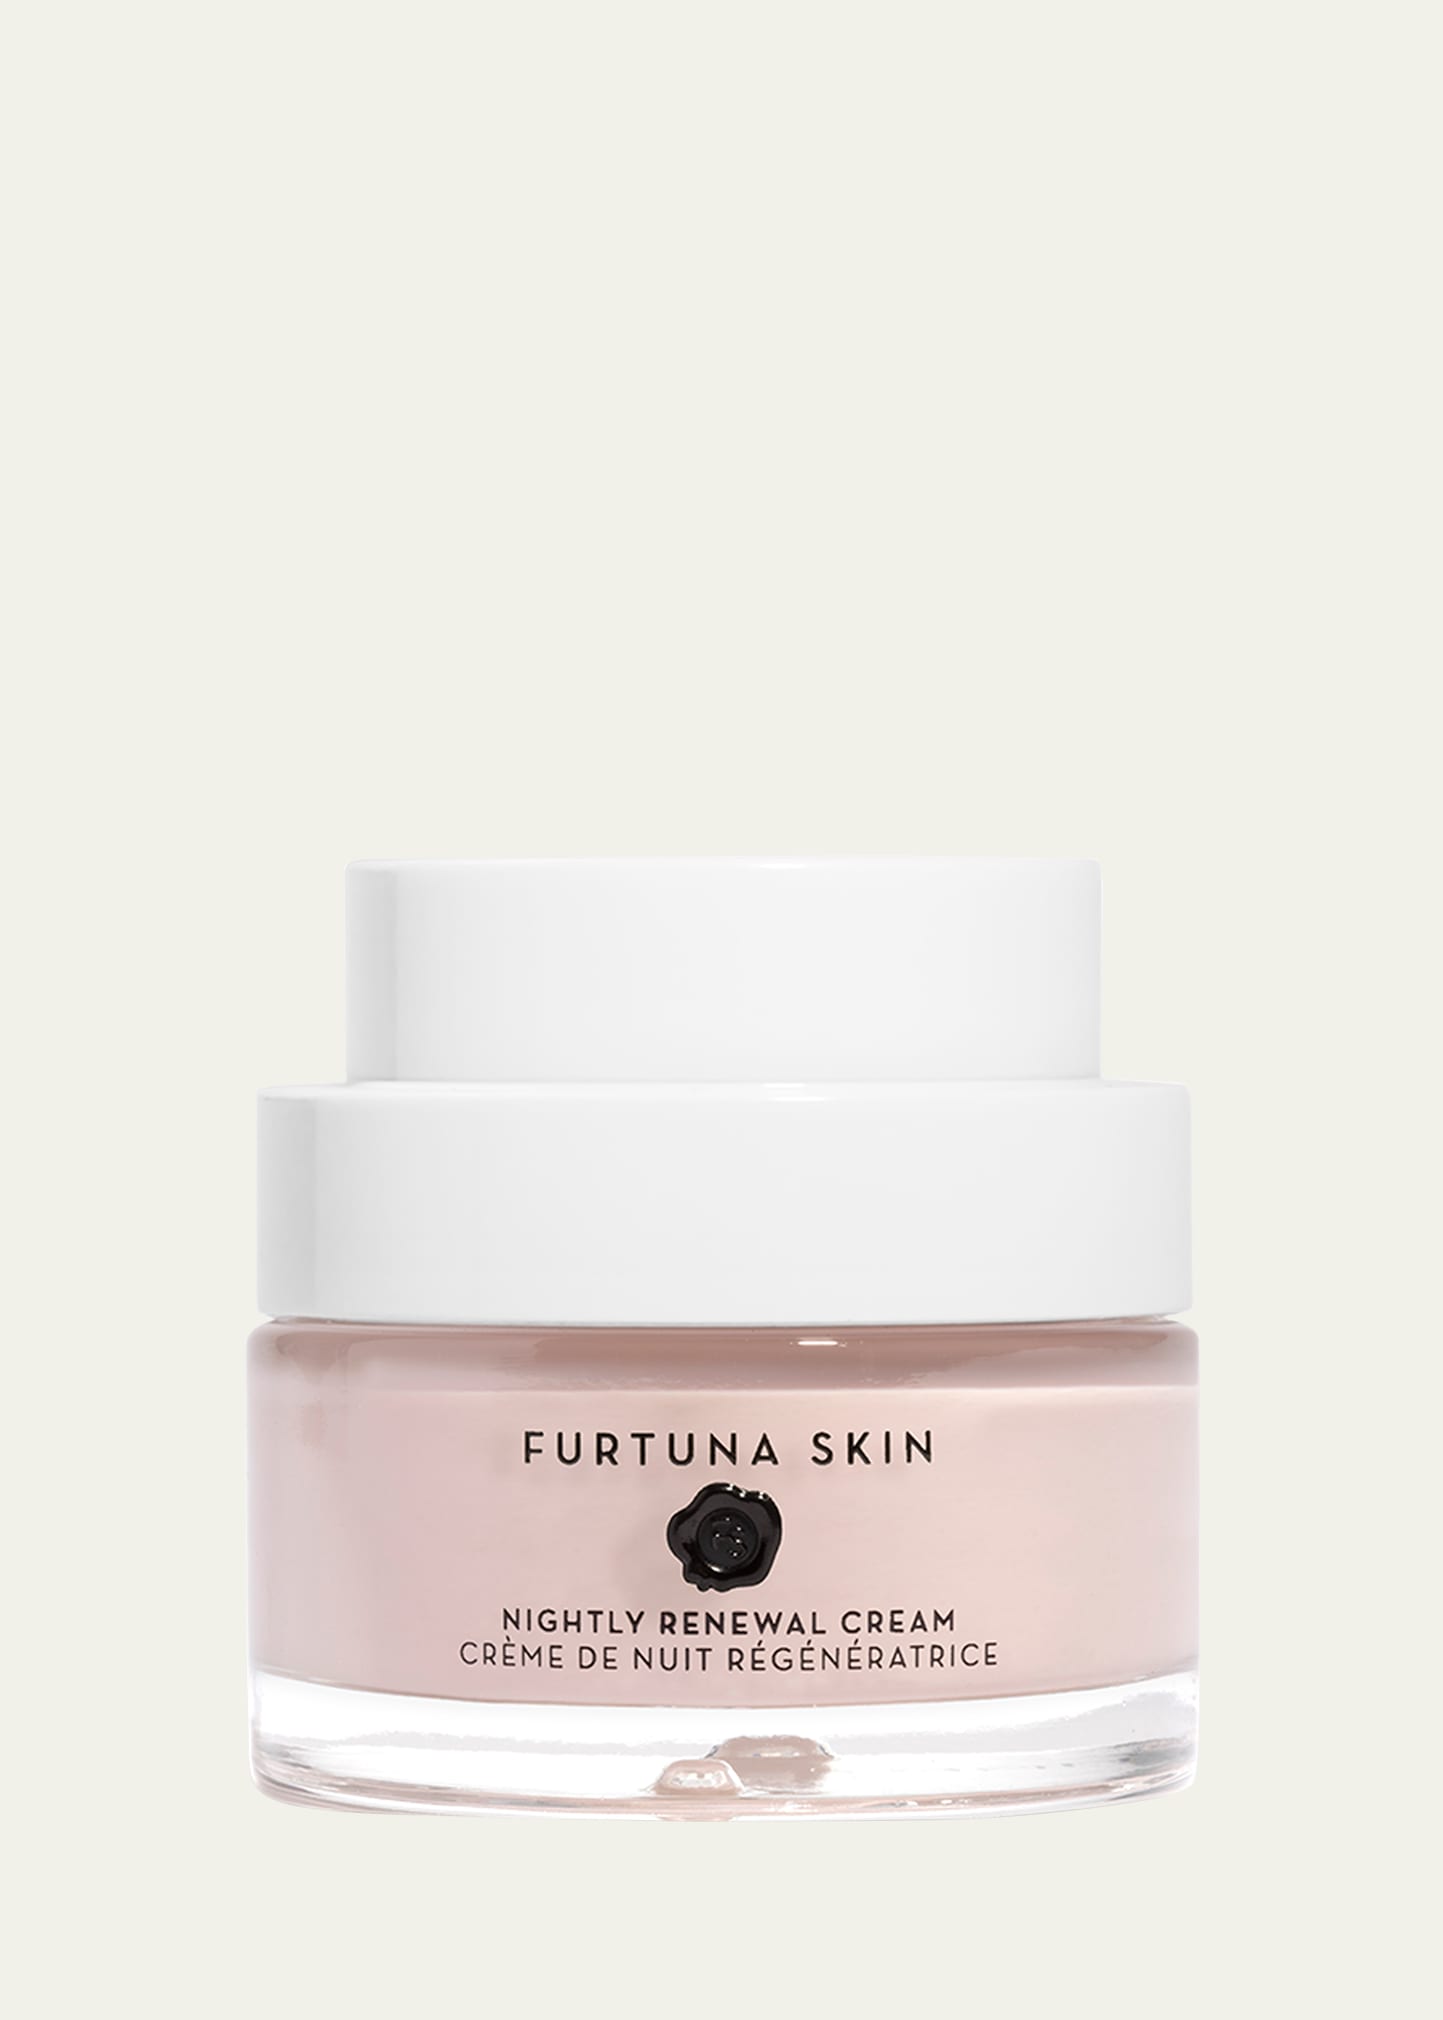 Furtuna Skin Fior di Luna Nightly Renewal Cream, 1.7 oz.